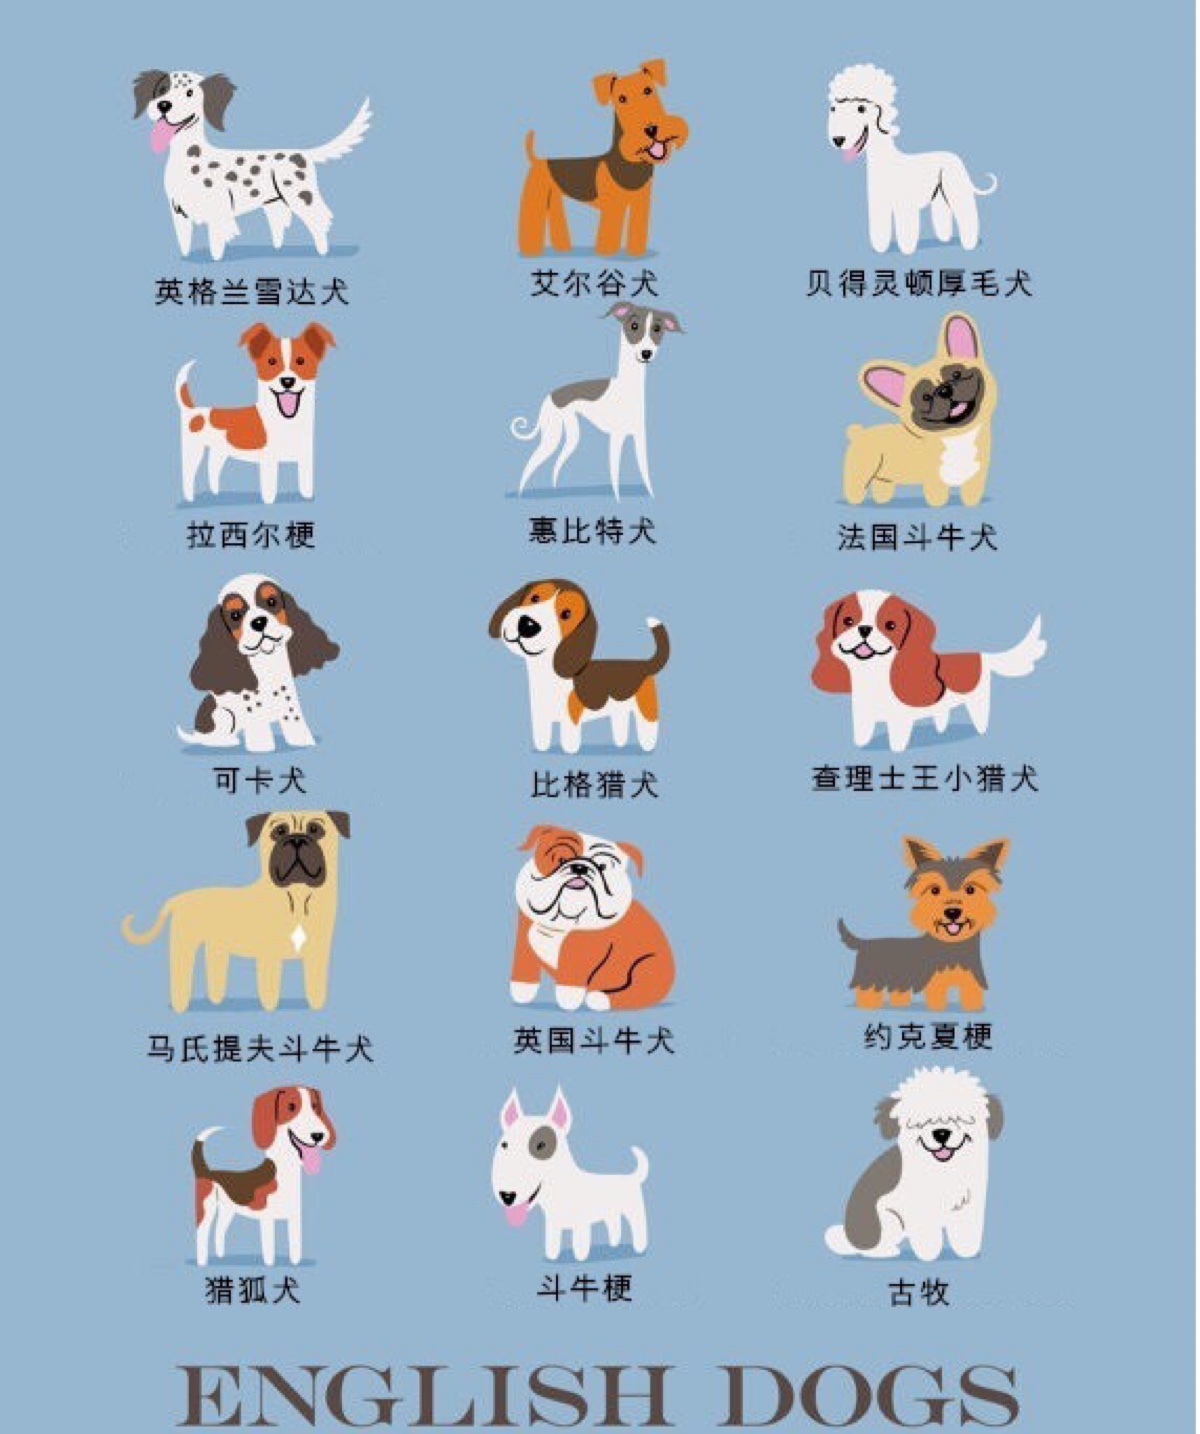 大全狗狗品种大全及图片卡通世界名犬介绍及图片狗品种卡通名犬图鉴狗